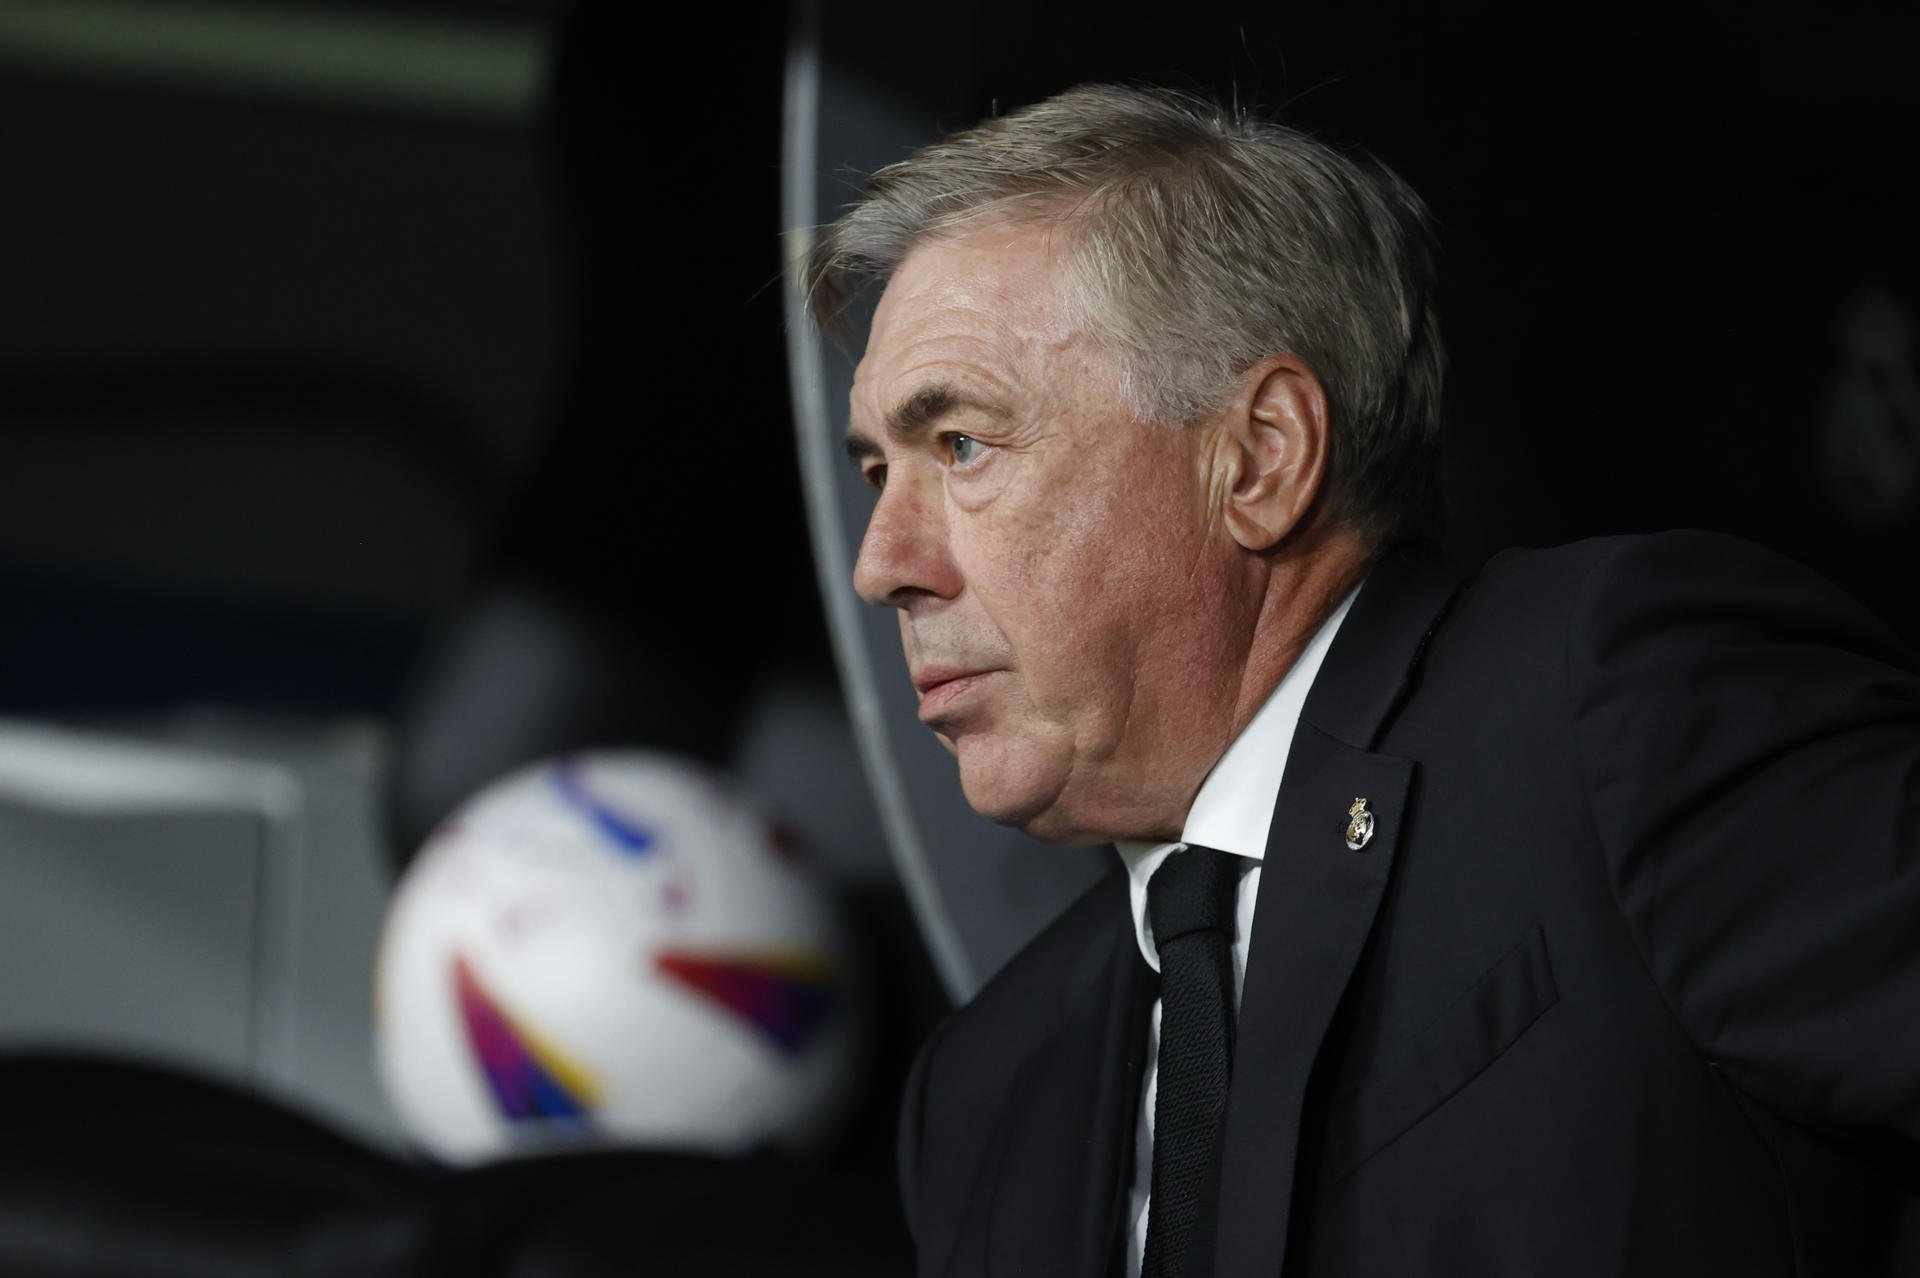 Vinícius no seguirà en el Reial Madrid per decisió d'Ancelotti, consensuada amb Florentino Pérez